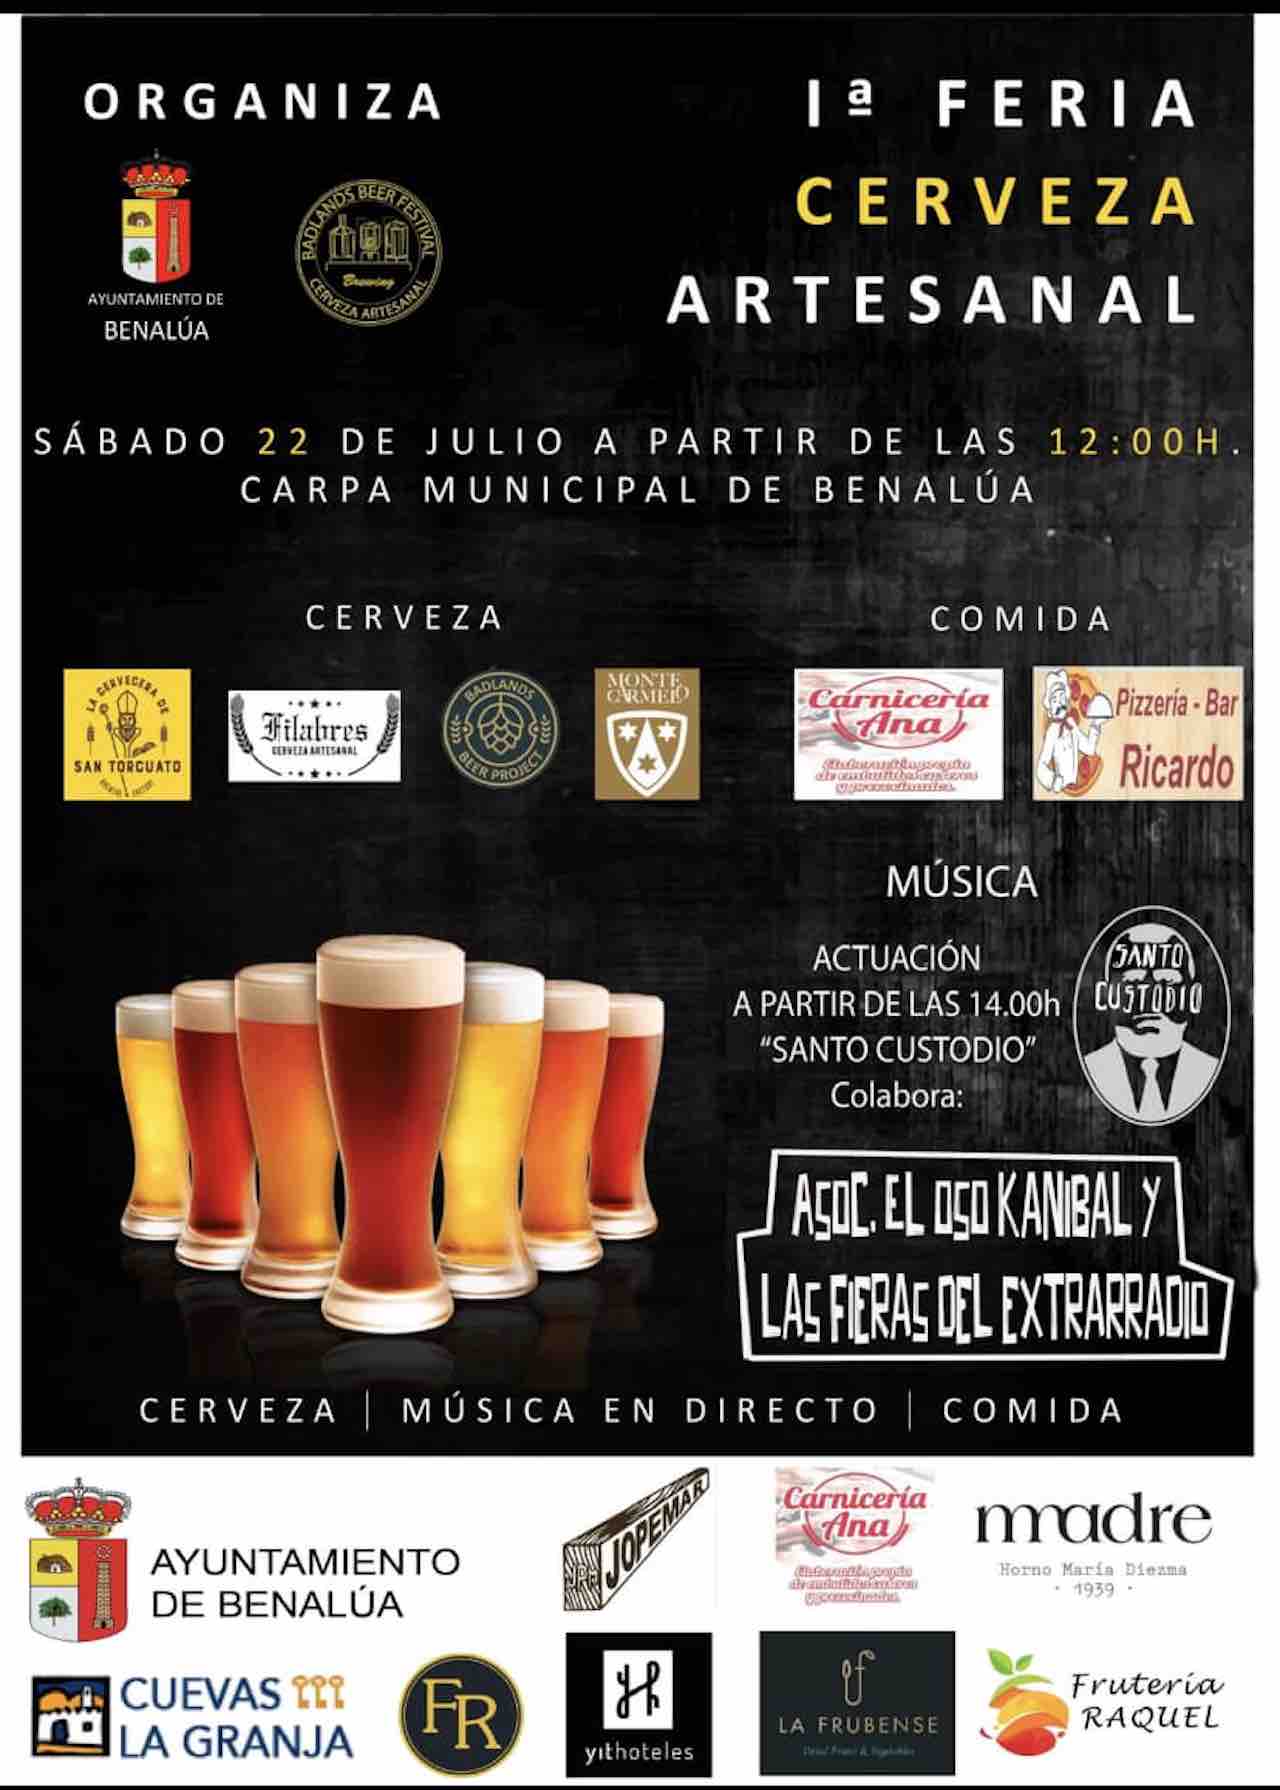 Feria de la Cerveza Artesanal